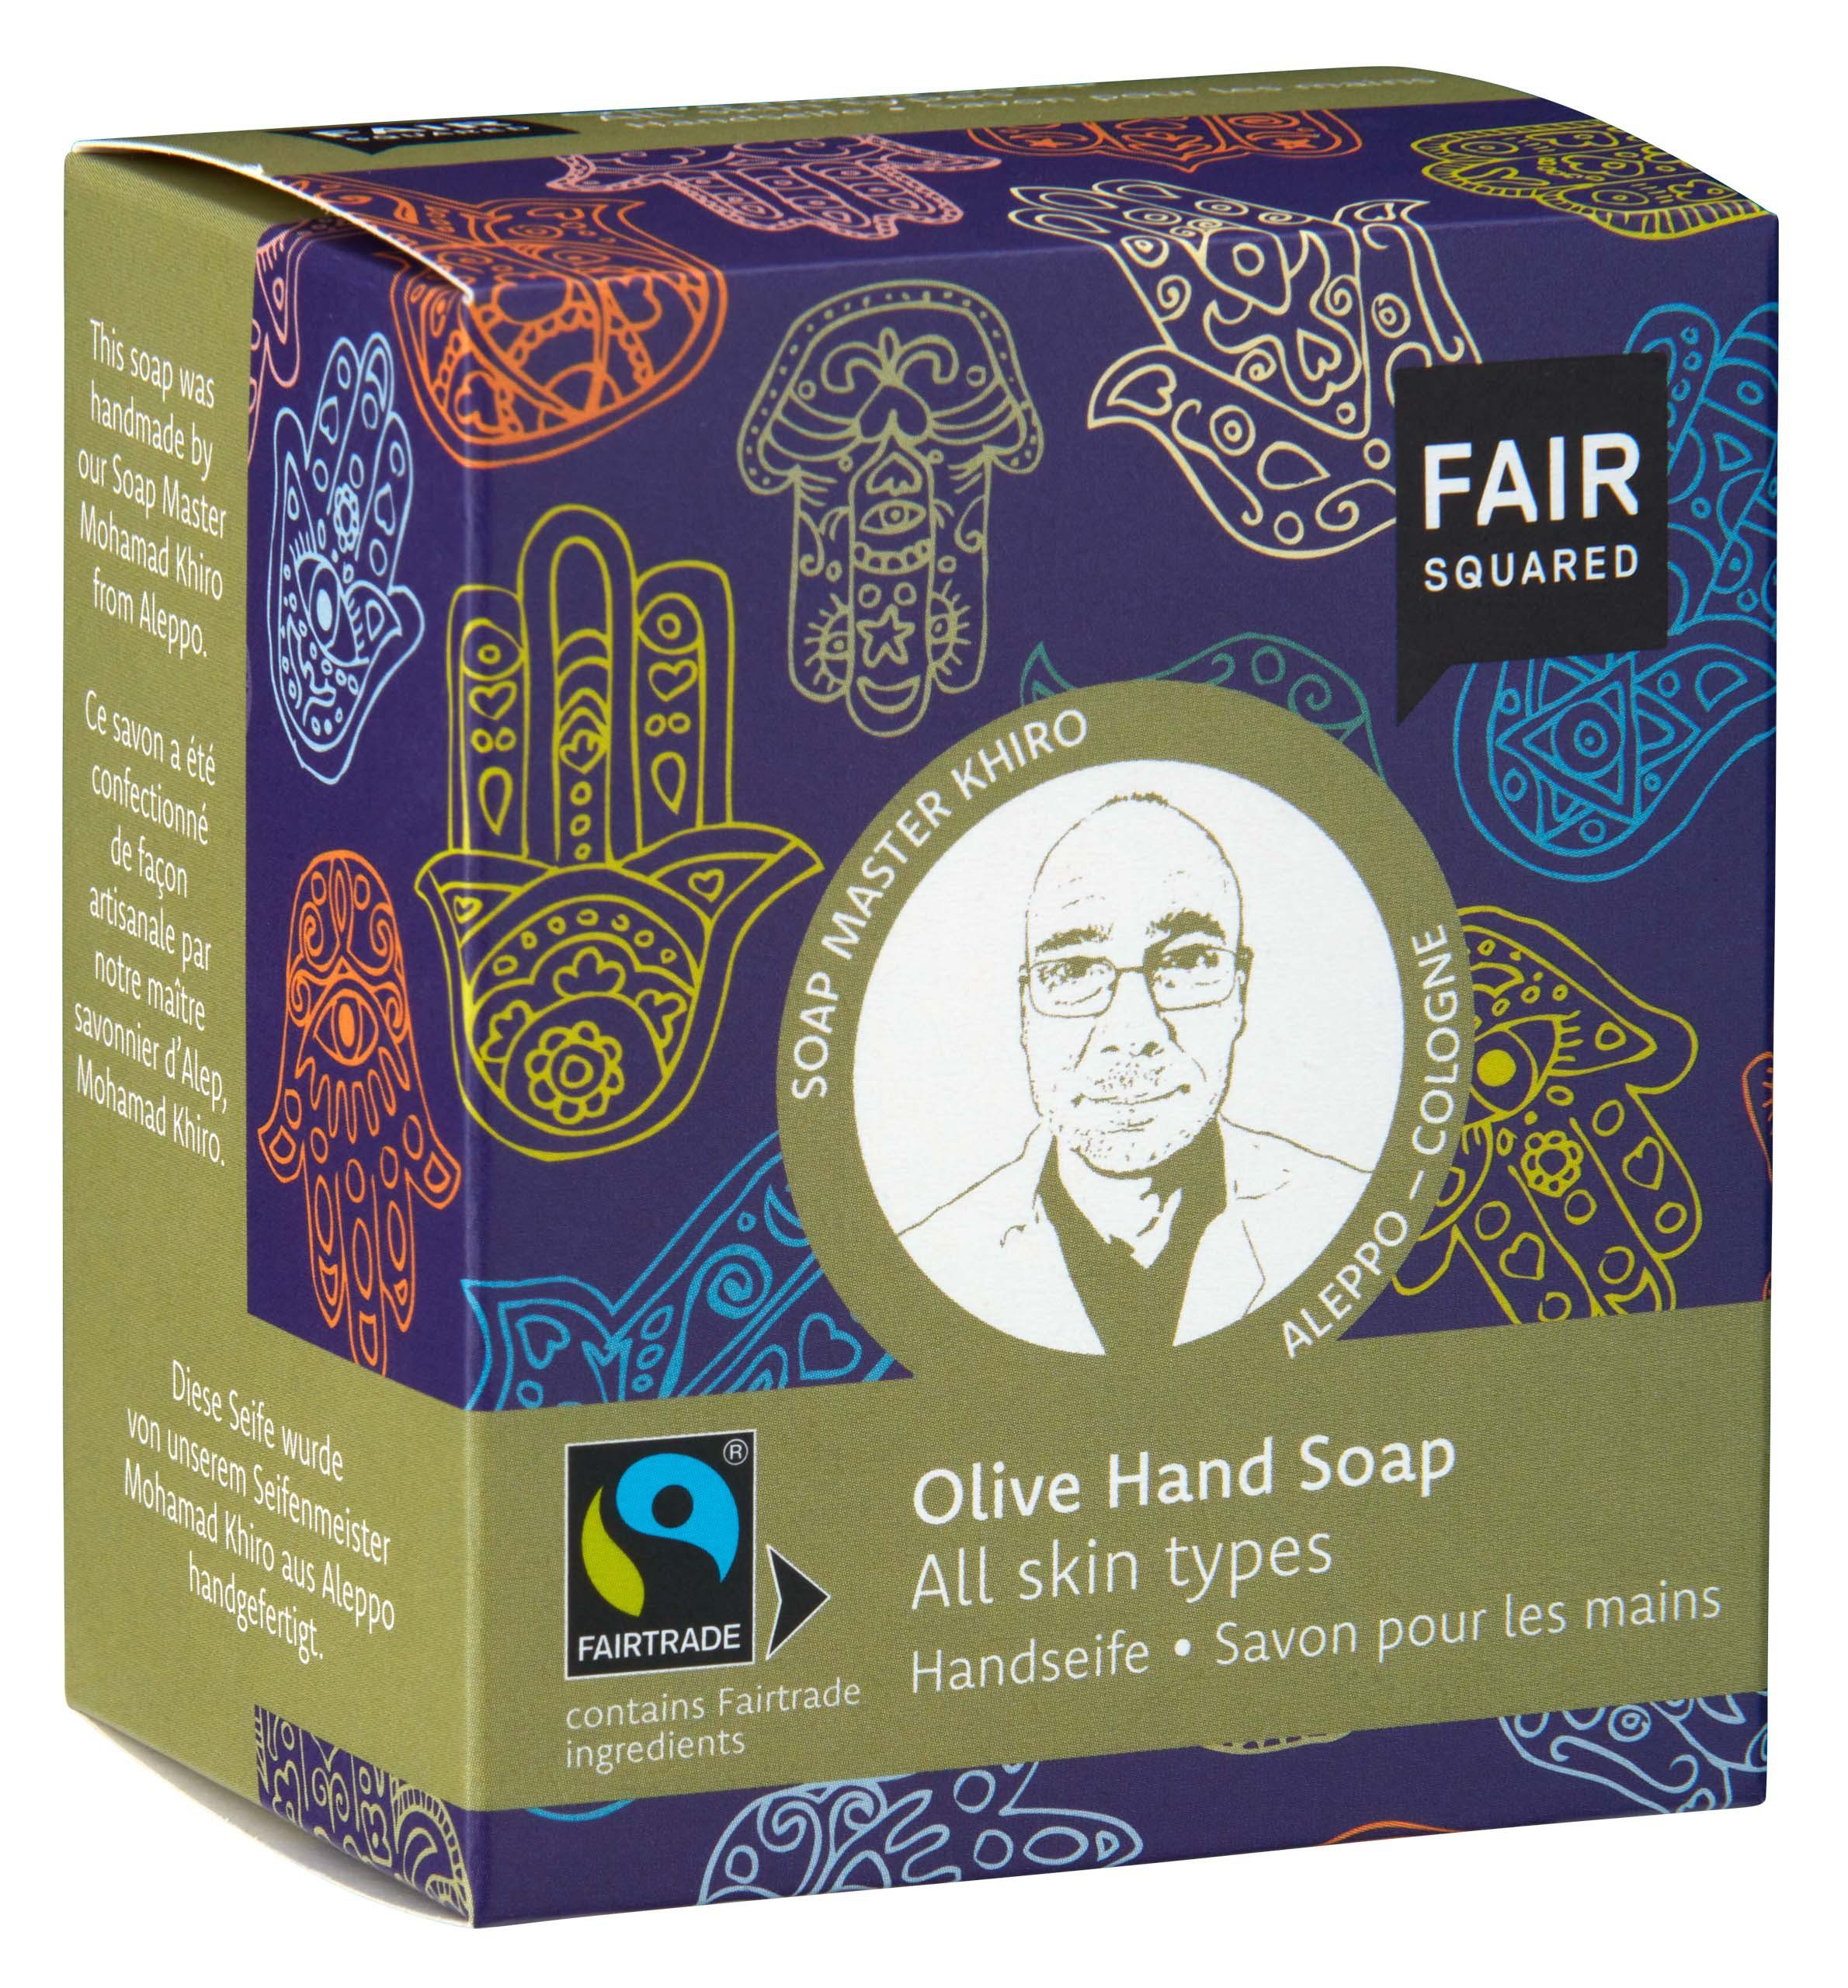 Handseife geeignet gehandelten Handseife für SQUARED fair mit Inhaltsstoffen, Hauttypen FAIR alle Hauttypen Für Squared Fair mit Olivenöl 1-tlg., alle